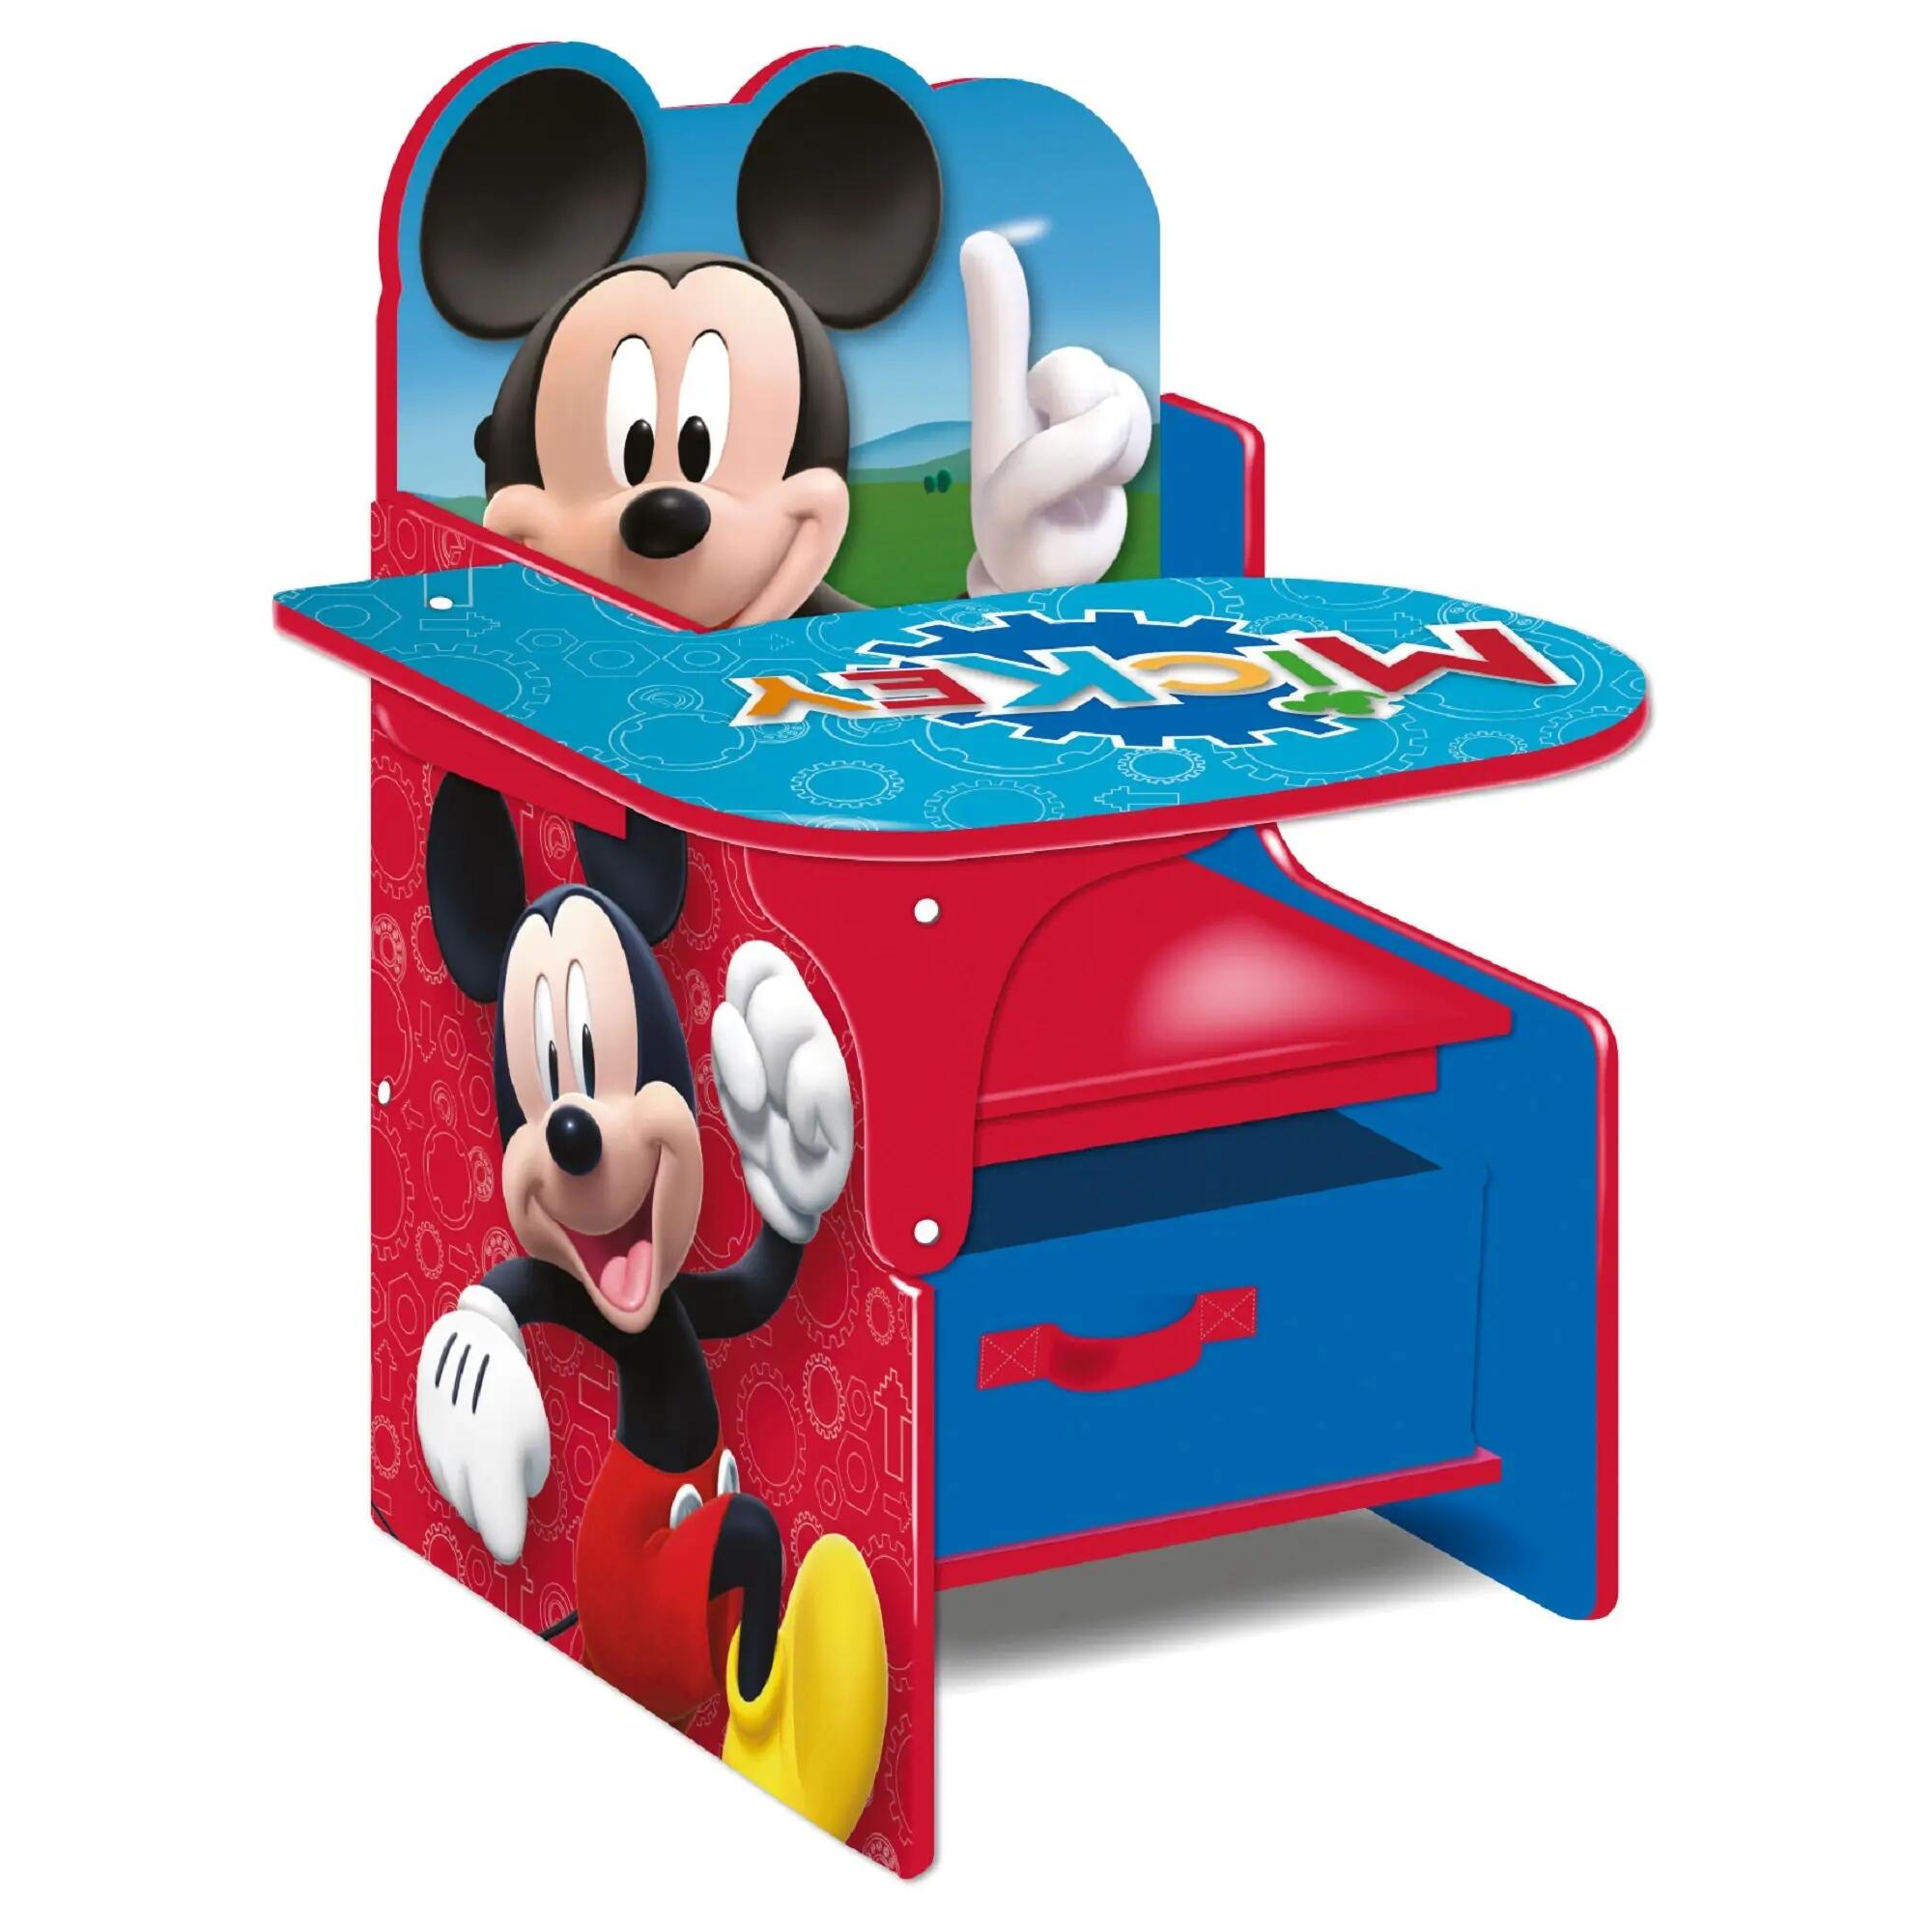 Silla pupitre de mickey mouse de madera color azul y rojo de 52x60x50cm